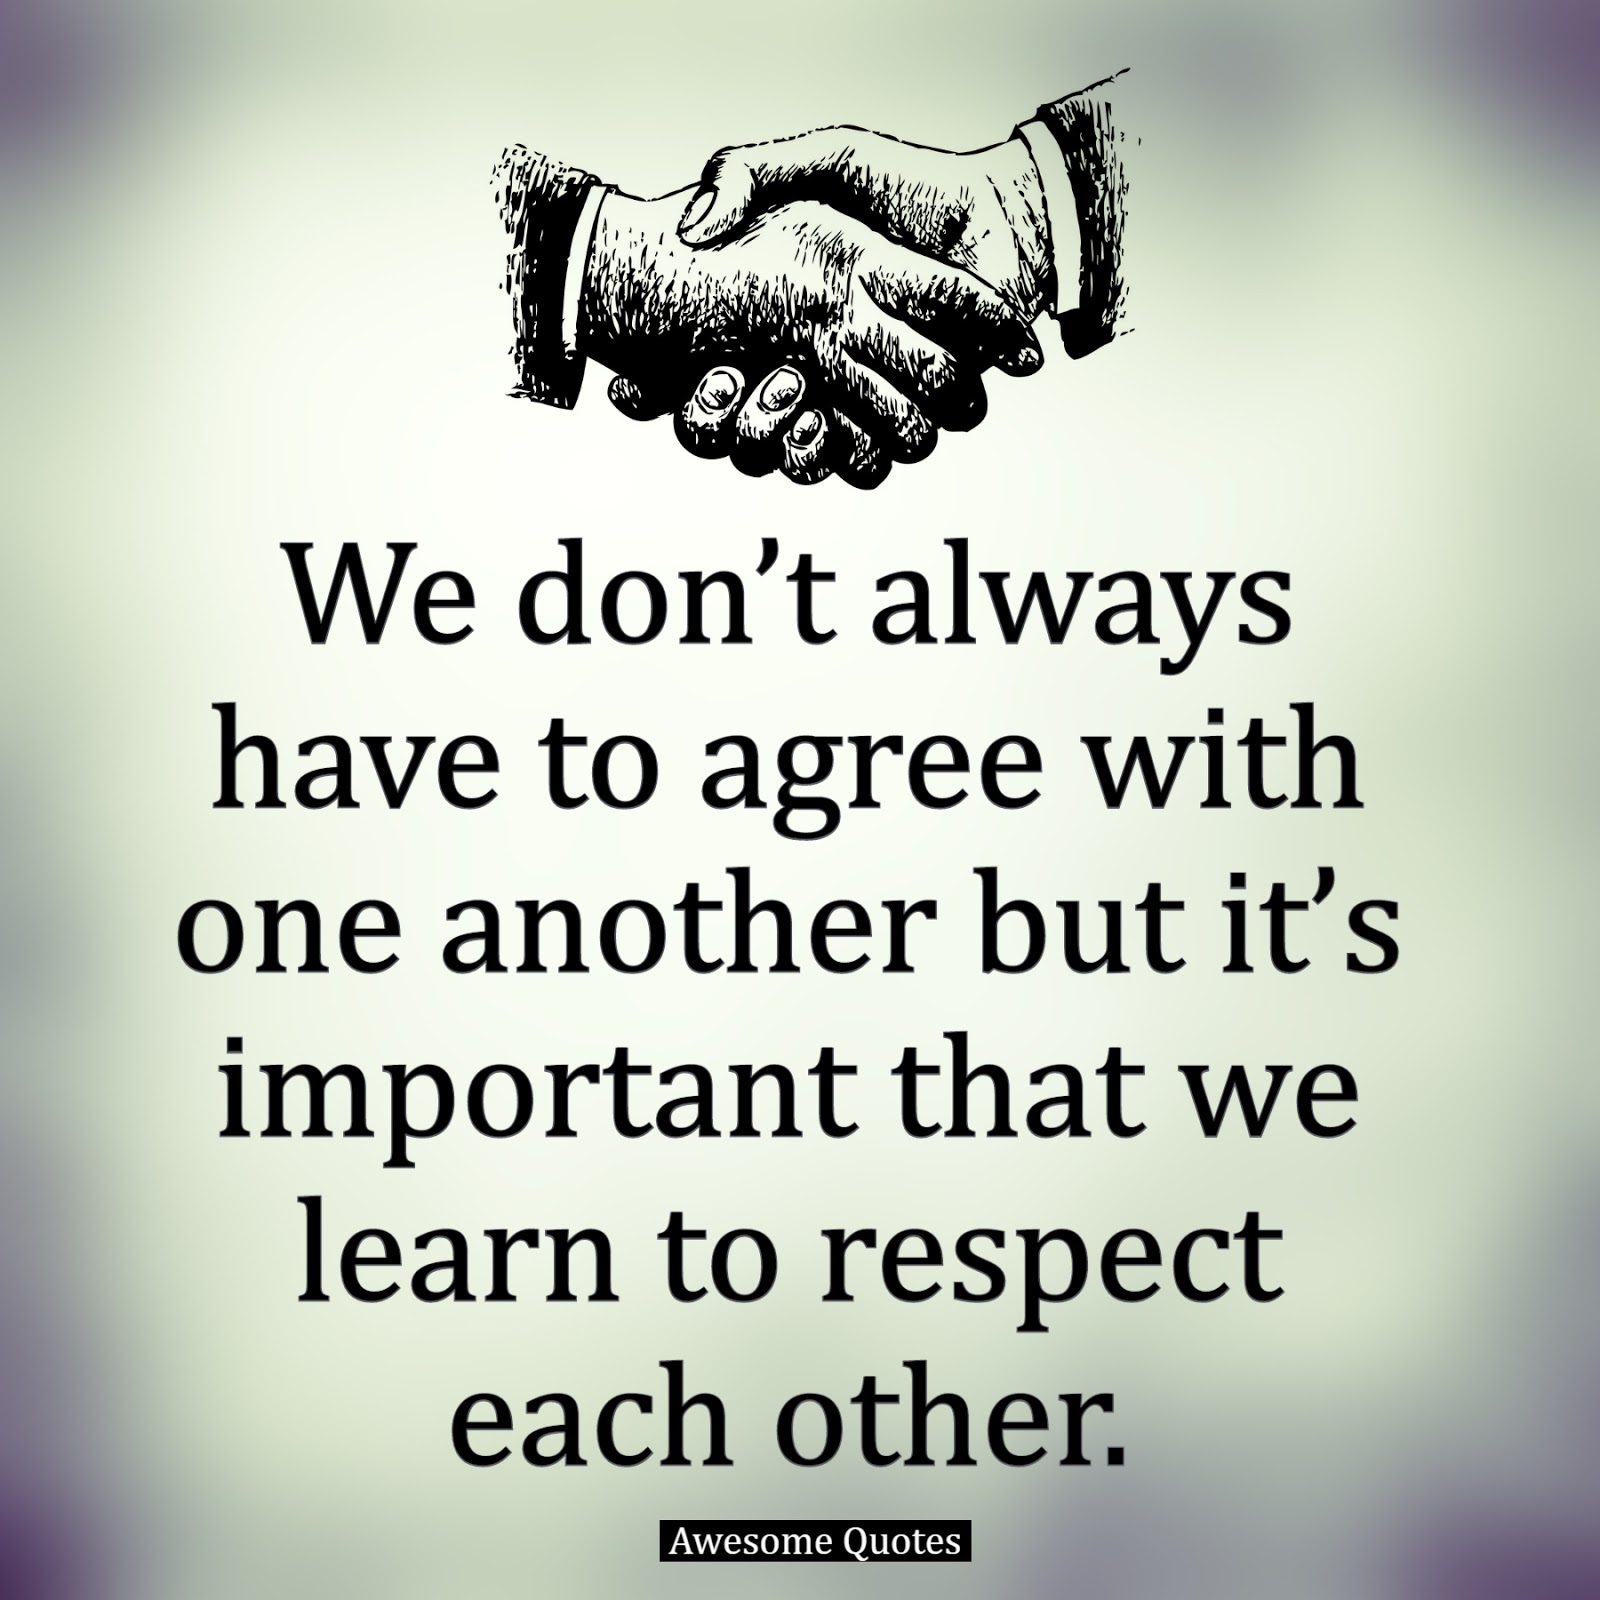 speech about respect each other